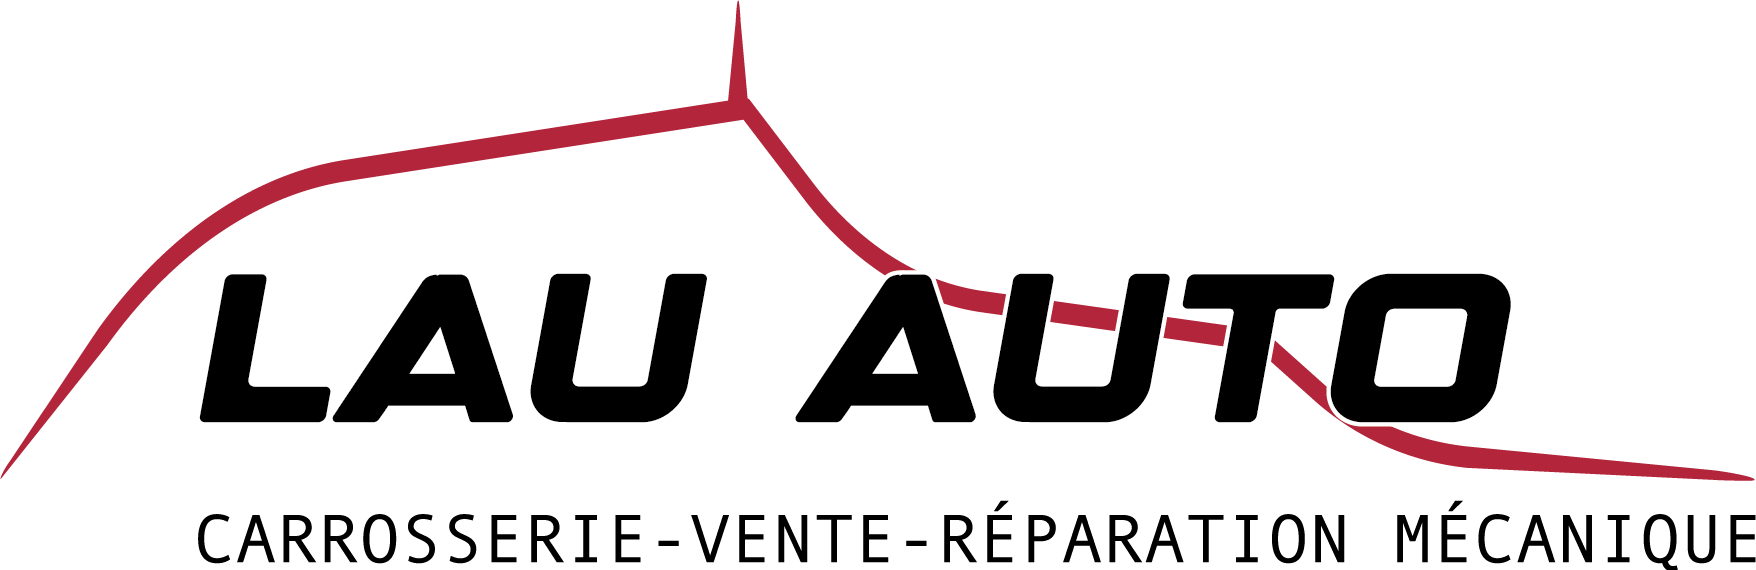 cropped-logo-base-noir-LAU-AUTO.png